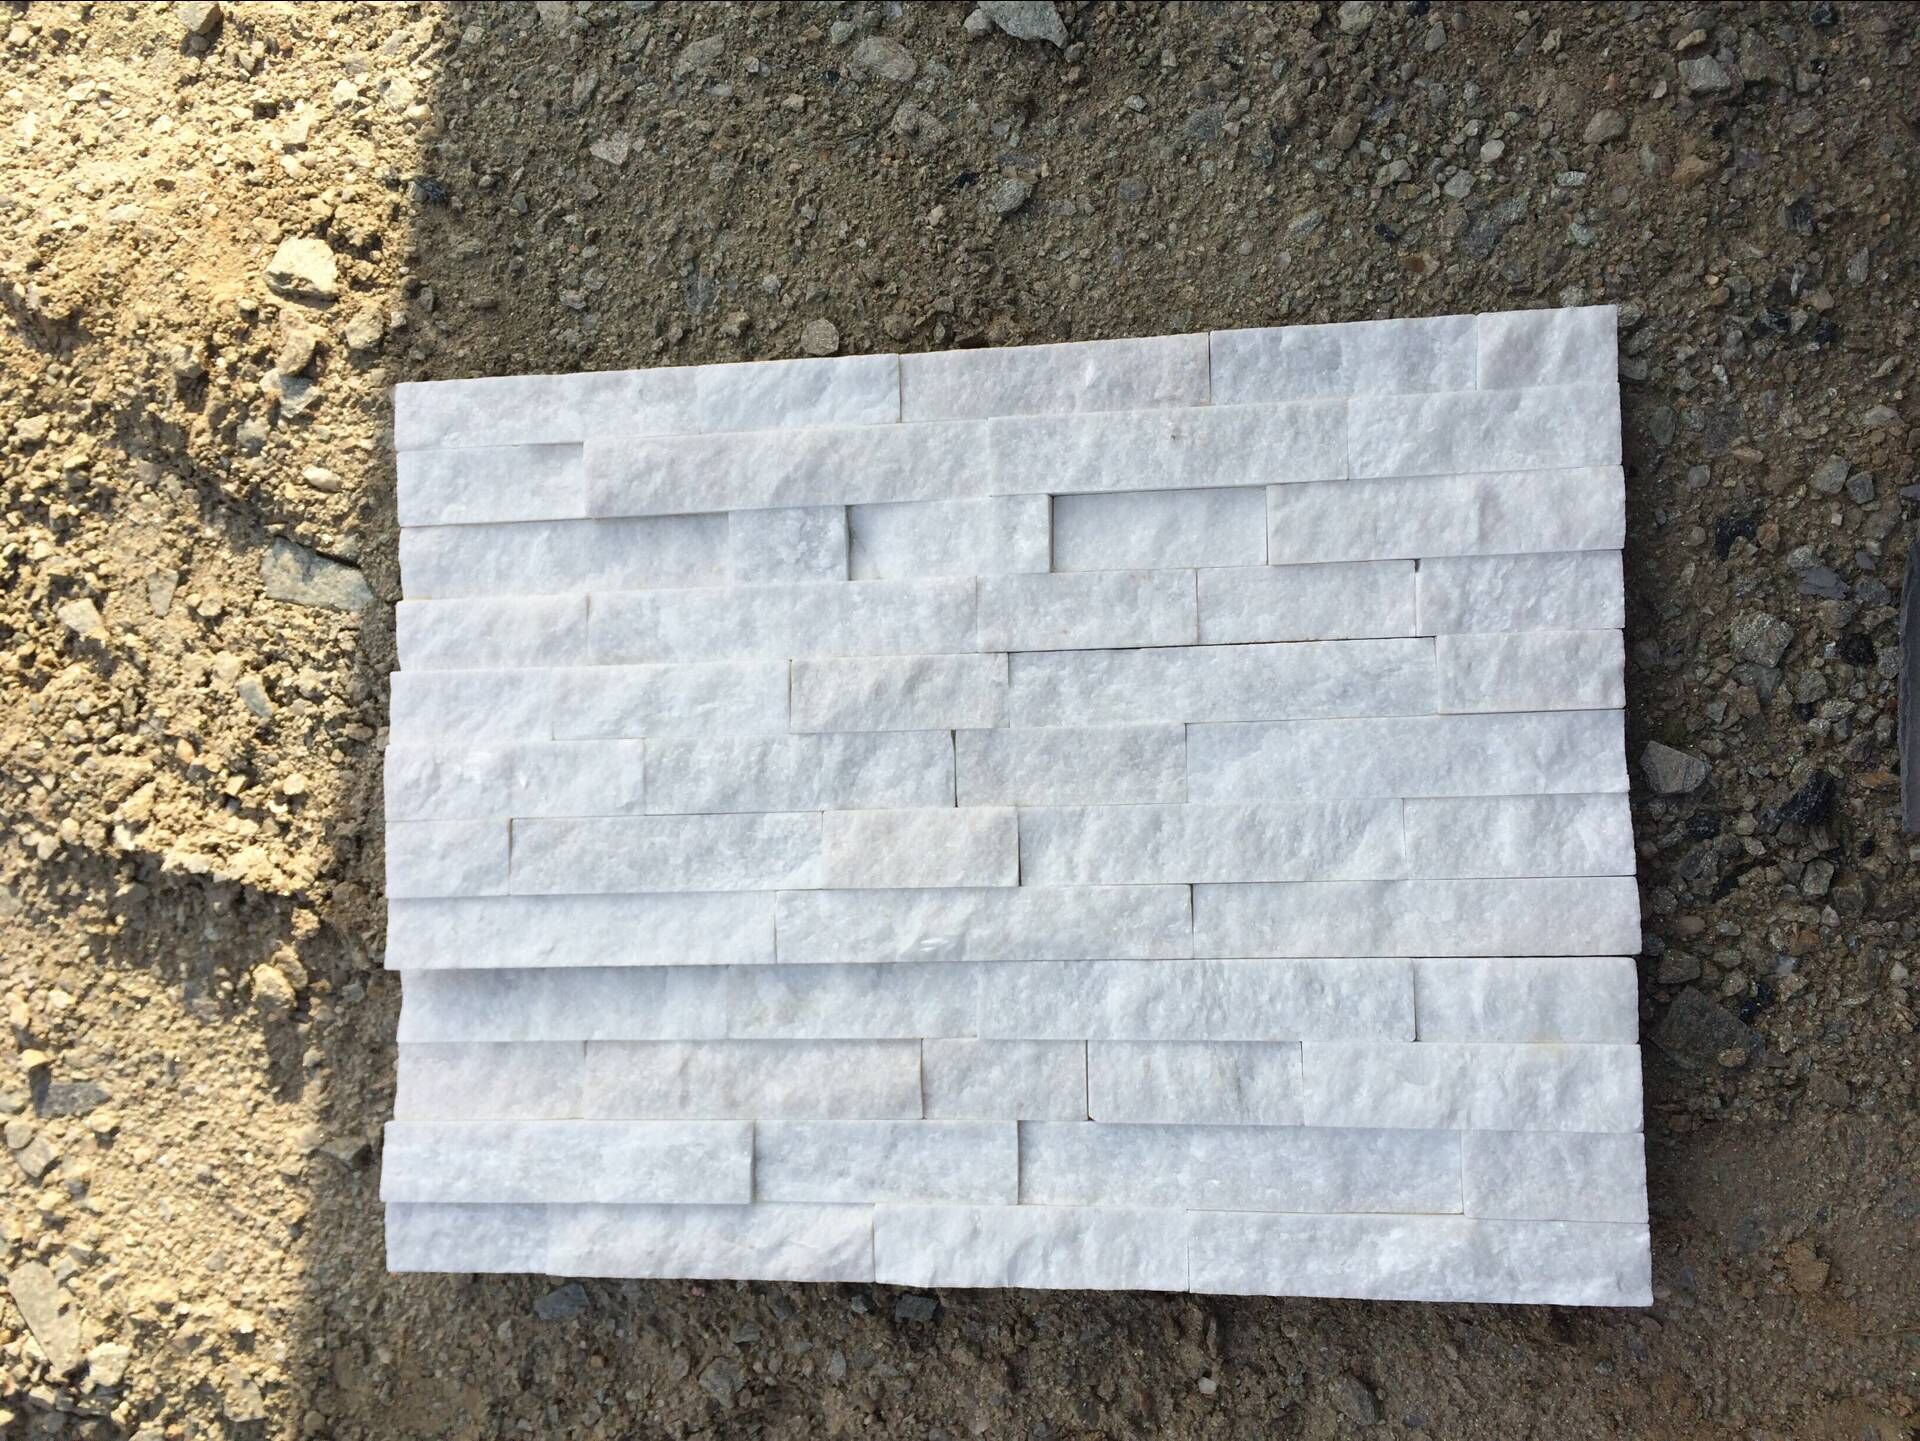 RSC 001 biały kwarcytowy kamień kulturowy do płytek ściennych
